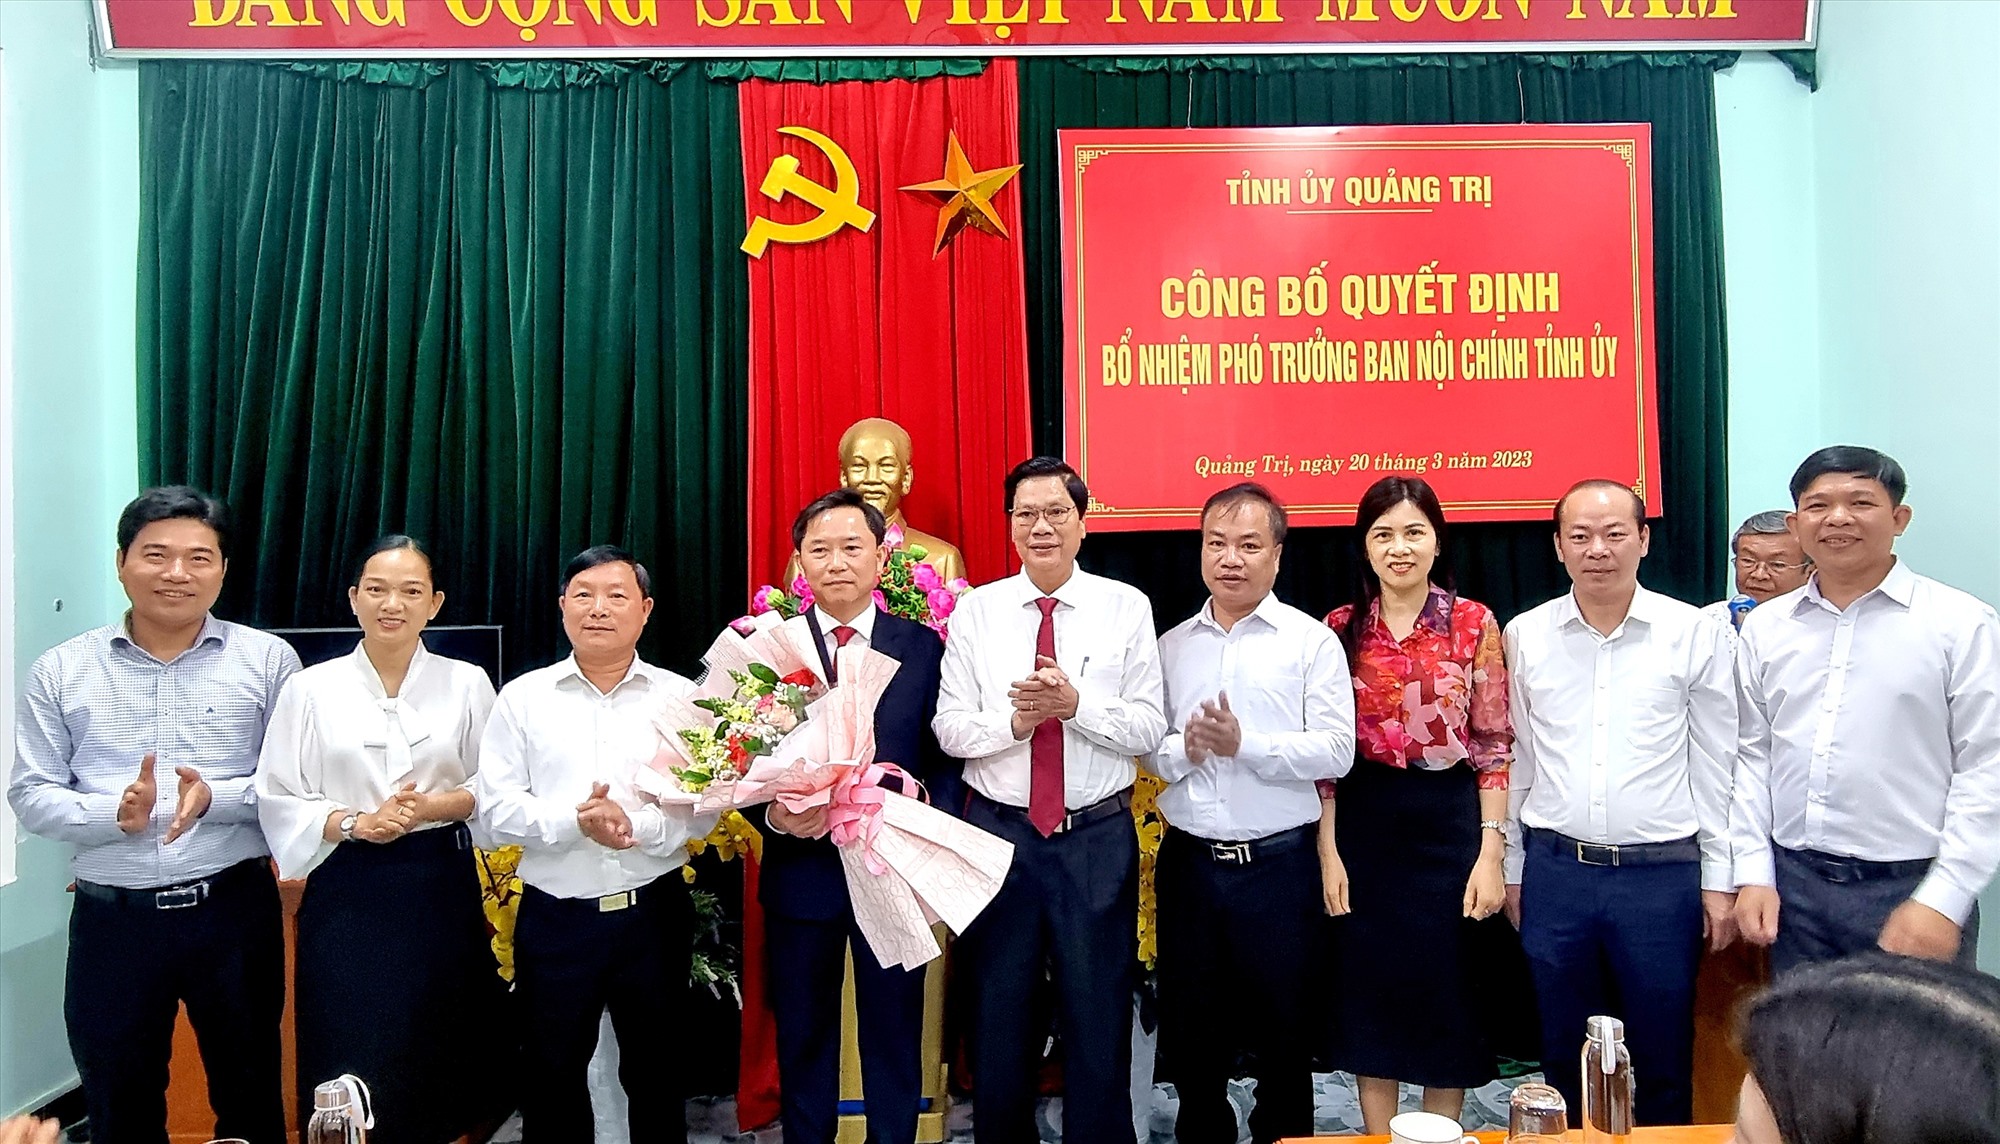 Trưởng Ban Tổ chức Tỉnh ủy Phan Văn Phụng tặng hoa chúc mừng tân Phó Trưởng Ban Nội chính Tỉnh ủy Hồ Trung - Ảnh: K.S